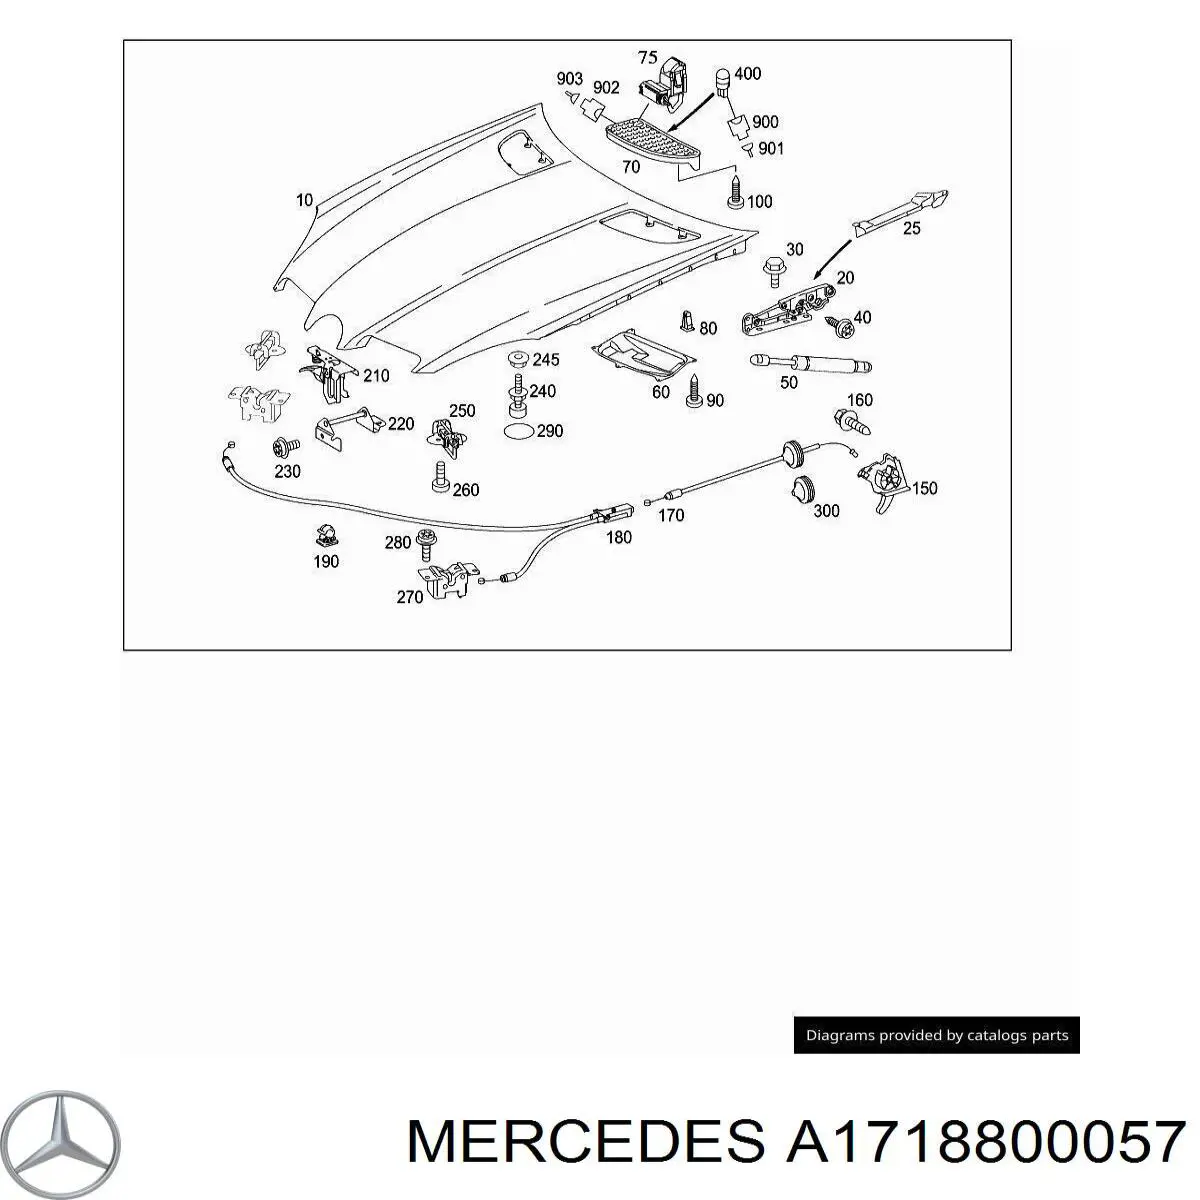 Capot para Mercedes SLK R171